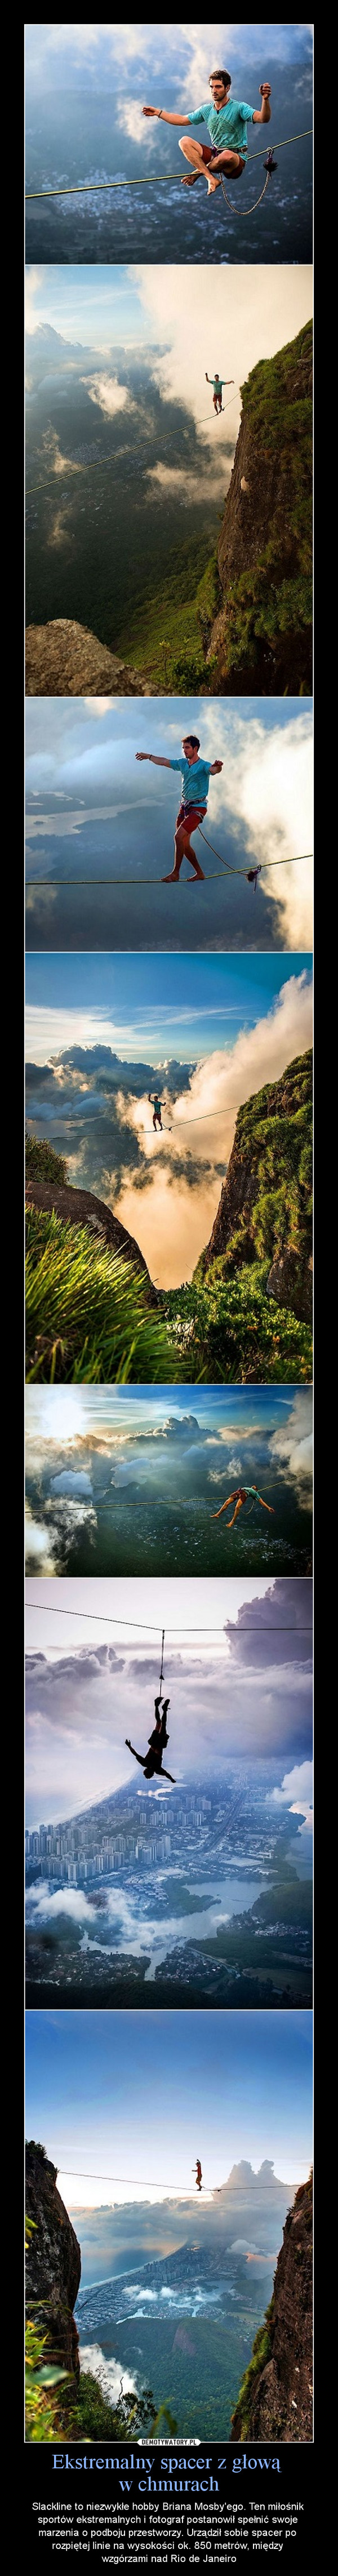 Ekstremalny spacer z głową w chmurach – Slackline to niezwykłe hobby Briana Mosby'ego. Ten miłośnik sportów ekstremalnych i fotograf postanowił spełnić swoje marzenia o podboju przestworzy. Urządził sobie spacer po rozpiętej linie na wysokości ok. 850 metrów, między wzgórzami nad Rio de Janeiro 